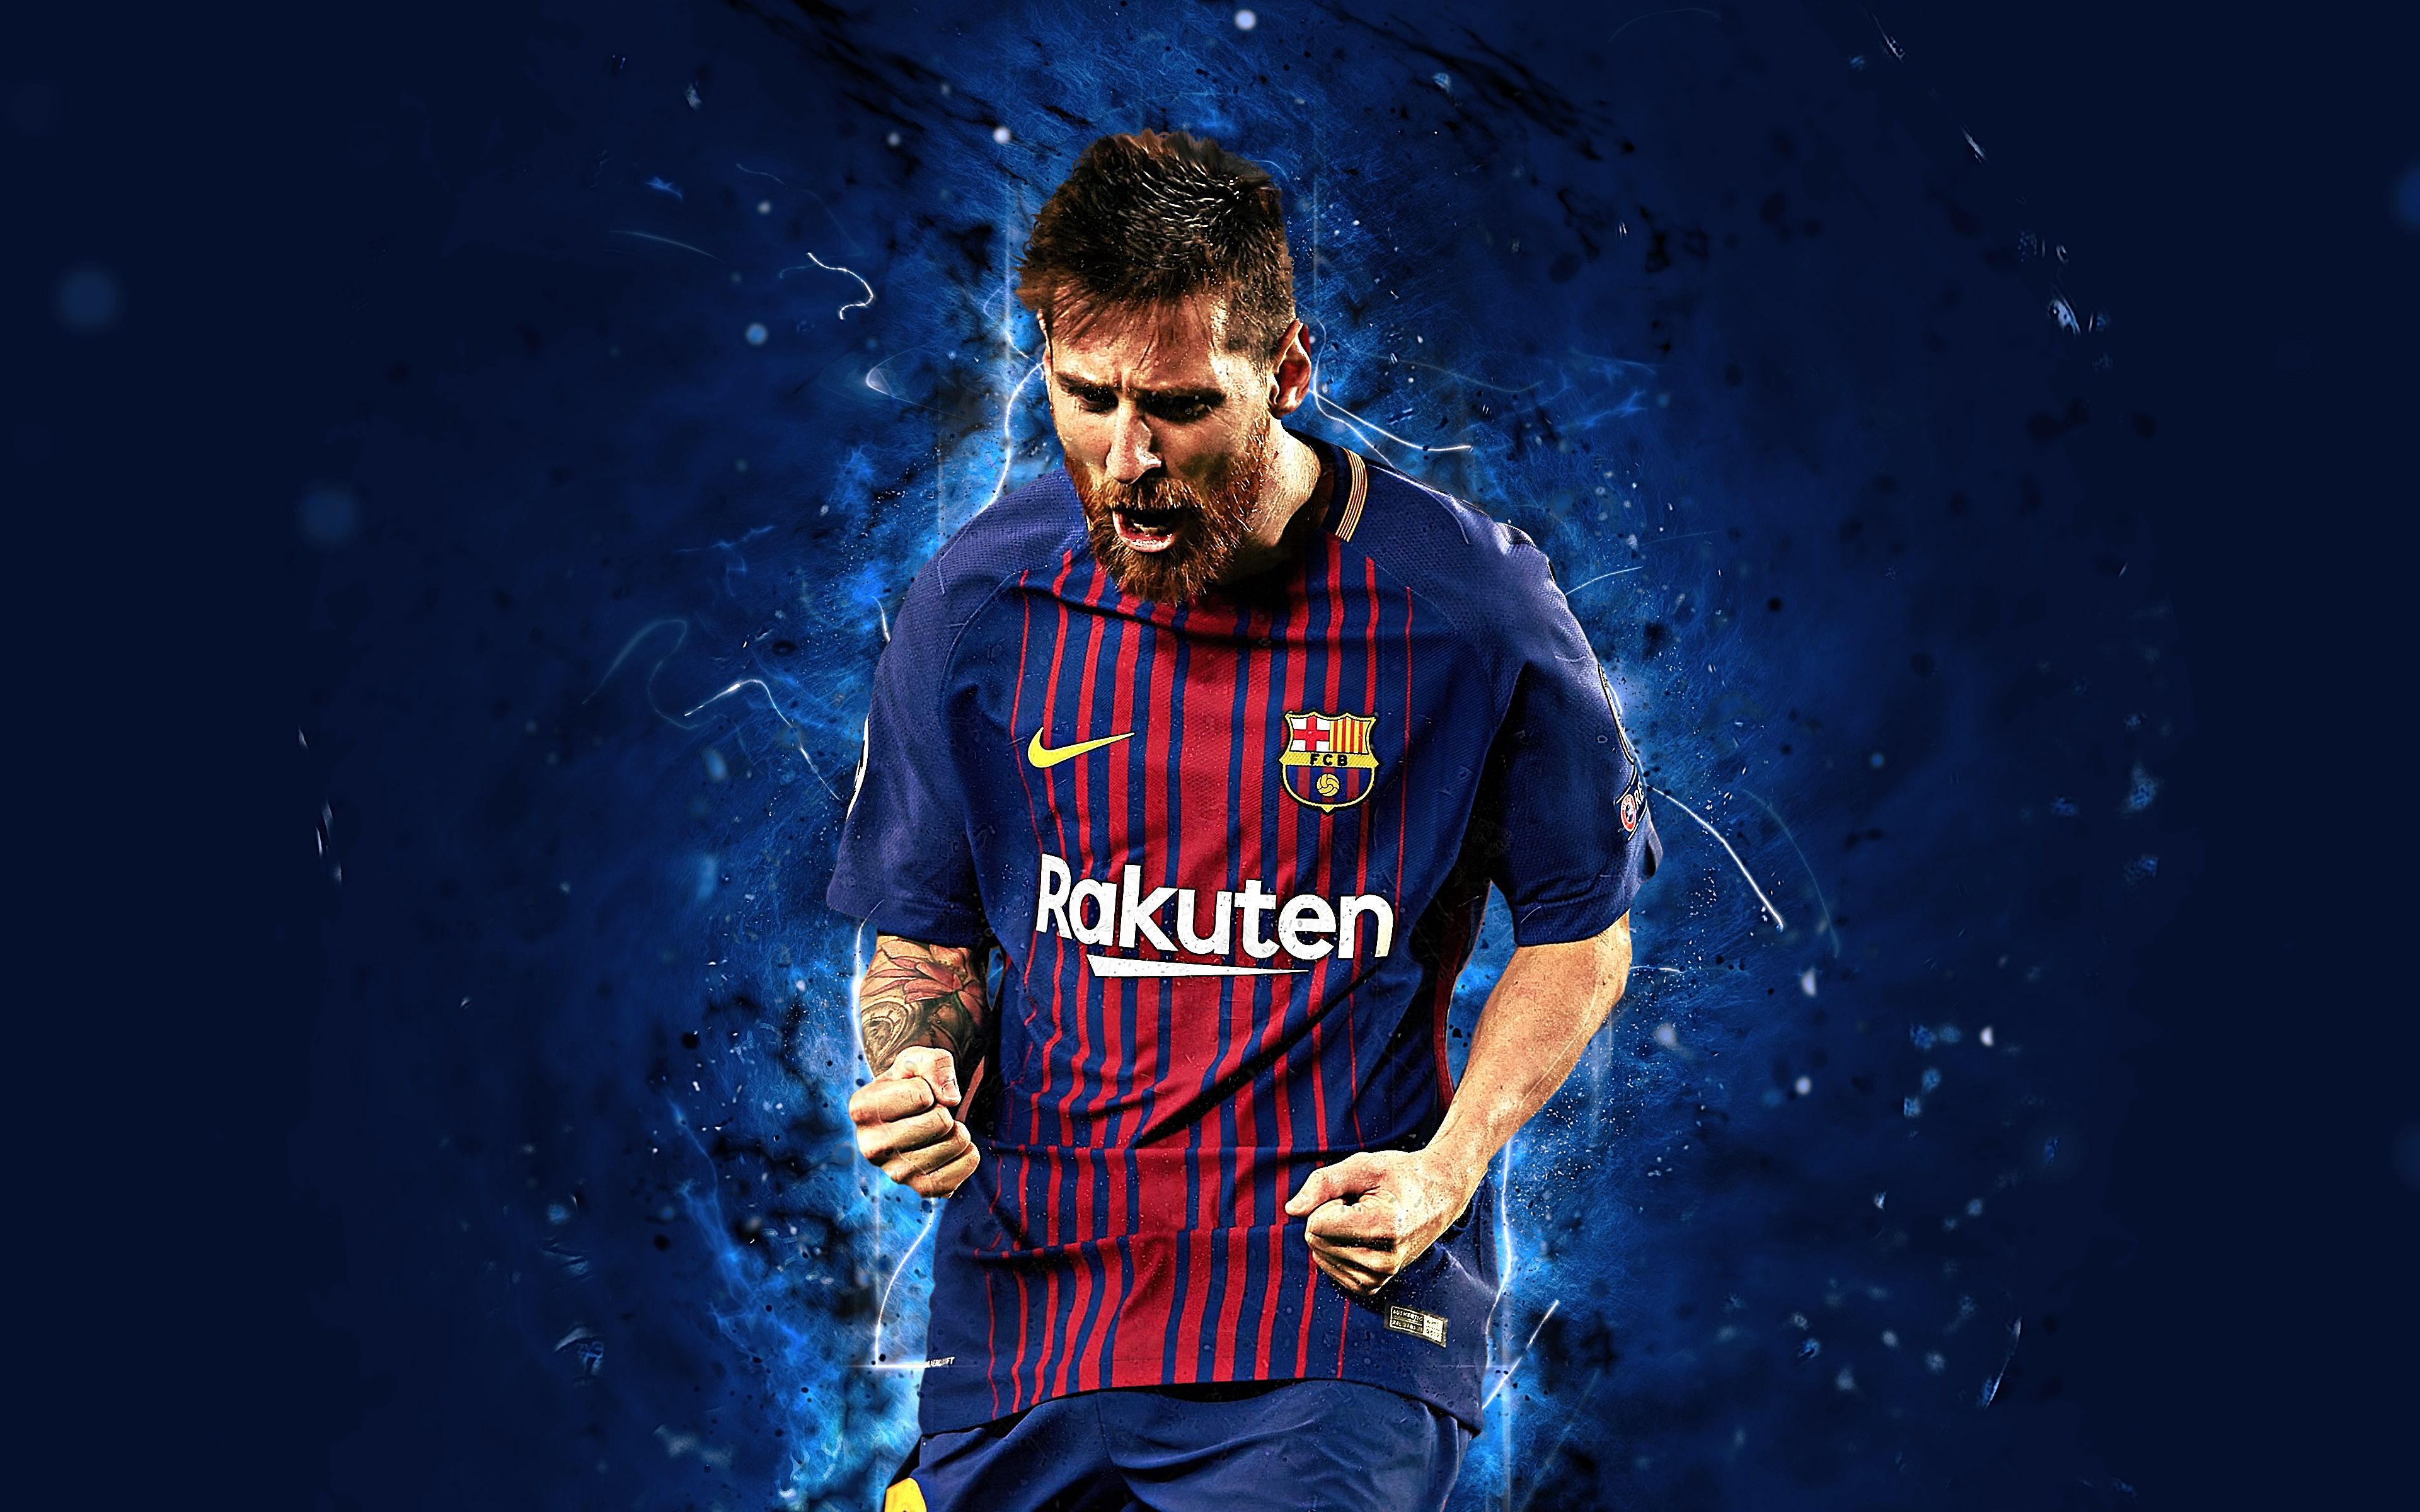 Hãy cập nhật cho mình những hình nền Messi 4K thật sắc nét và chất lượng để tận hưởng những khoảnh khắc đẹp mắt nhất của Messi trong các trận đấu!